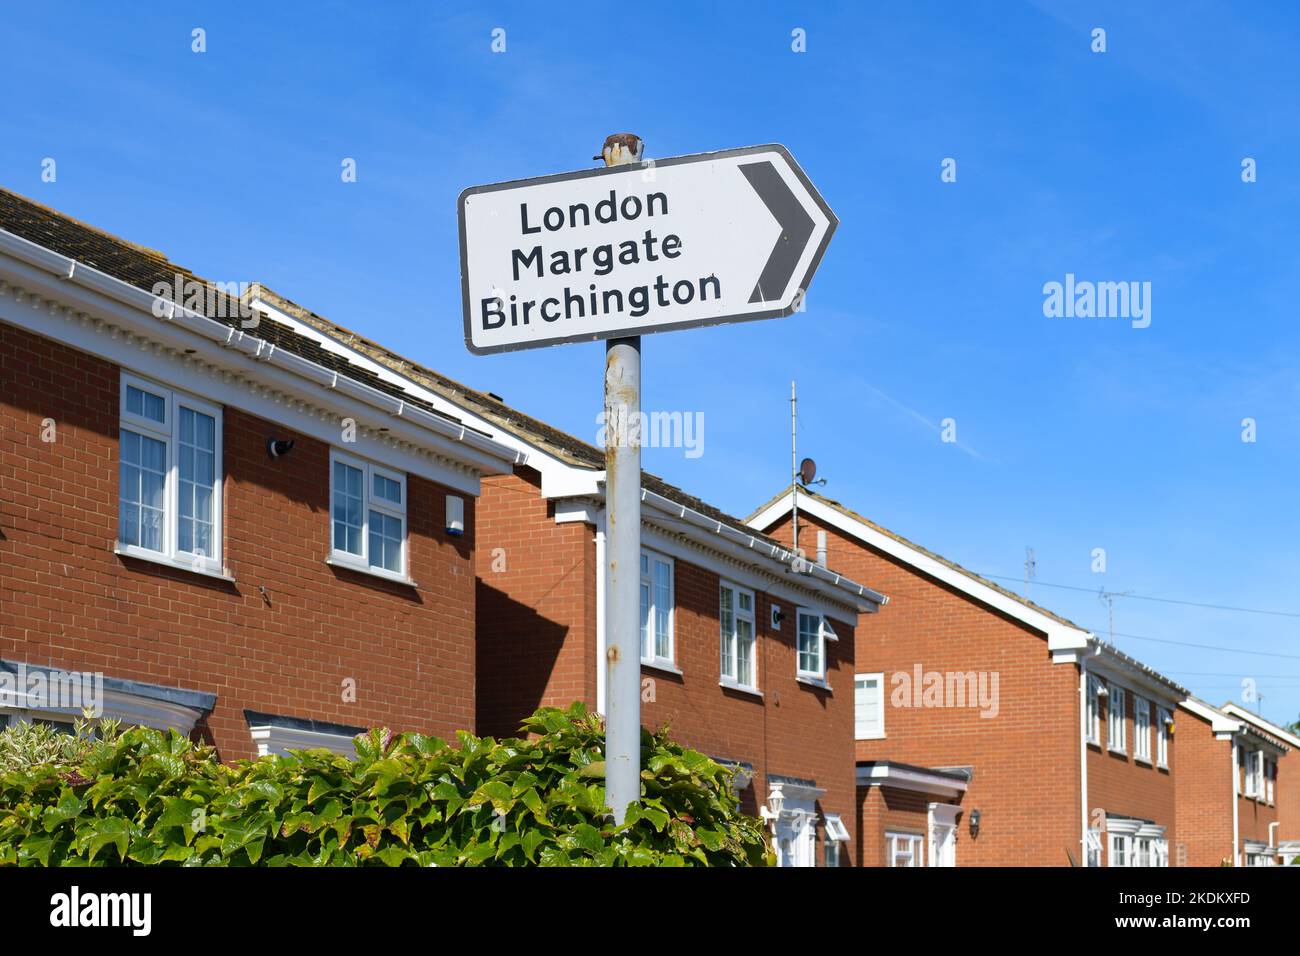 London Margate Birchington Road signe au milieu de la propriété de logement, Birchington on Sea, Kent, Angleterre, Royaume-Uni Banque D'Images